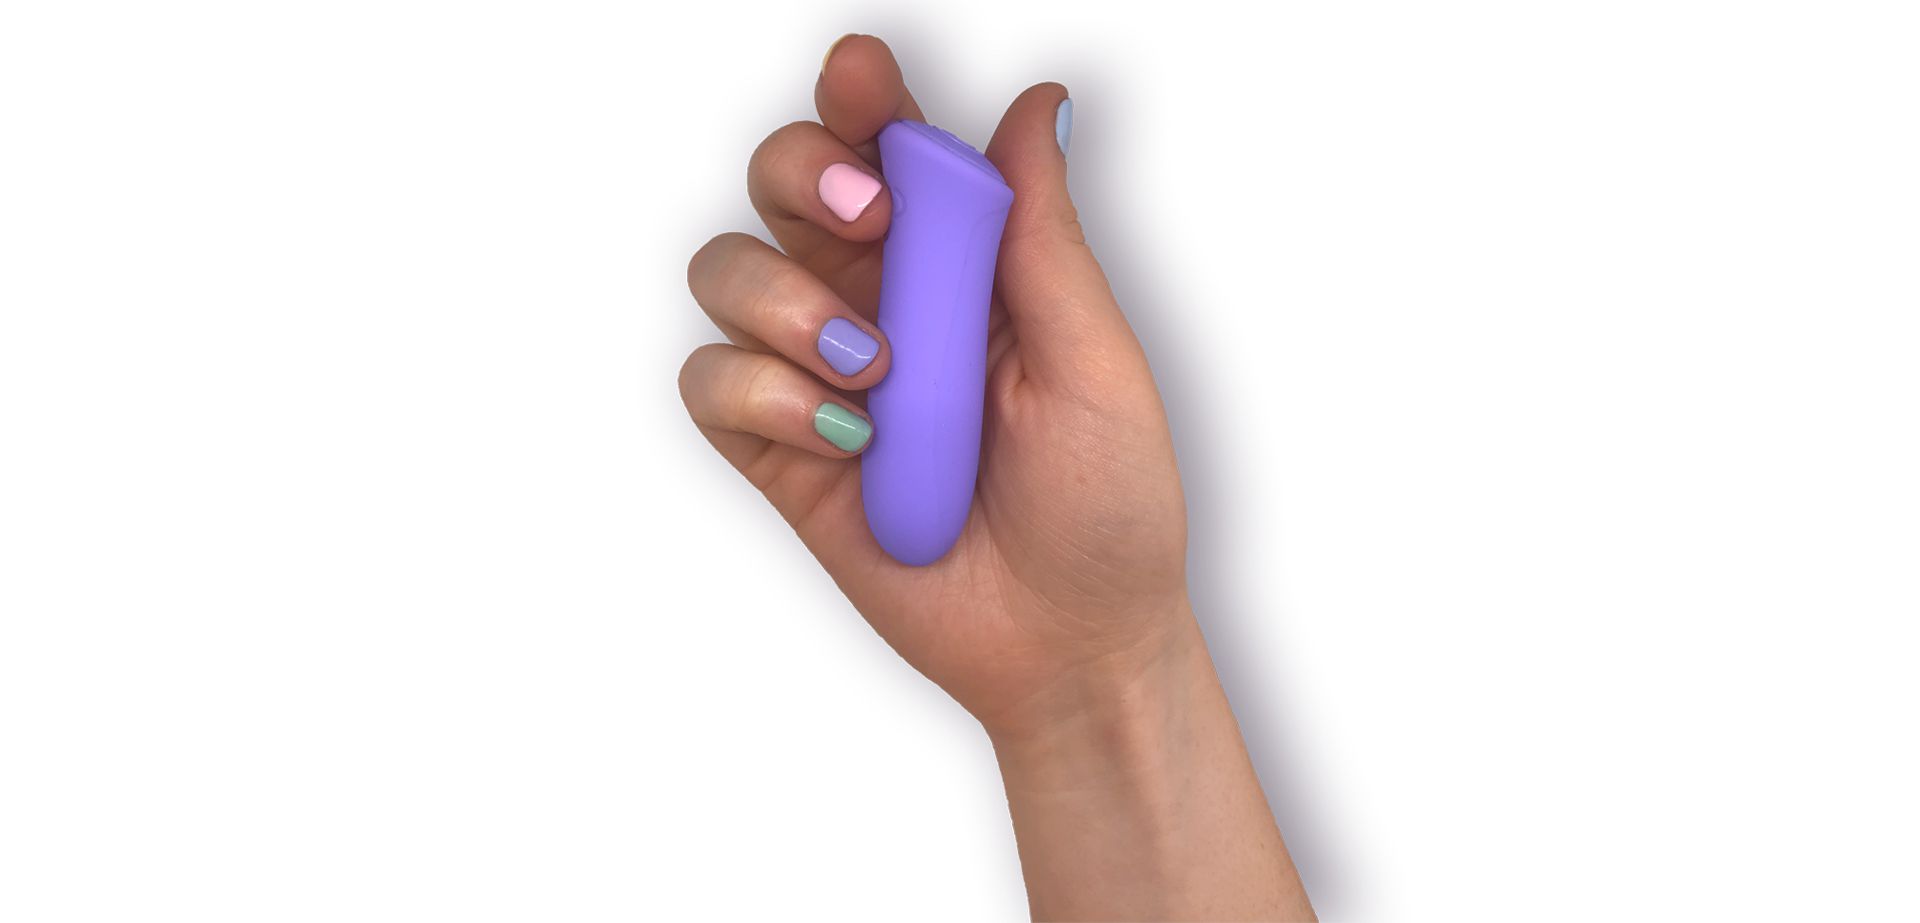 Purple Silinone Vibrator In Hand.